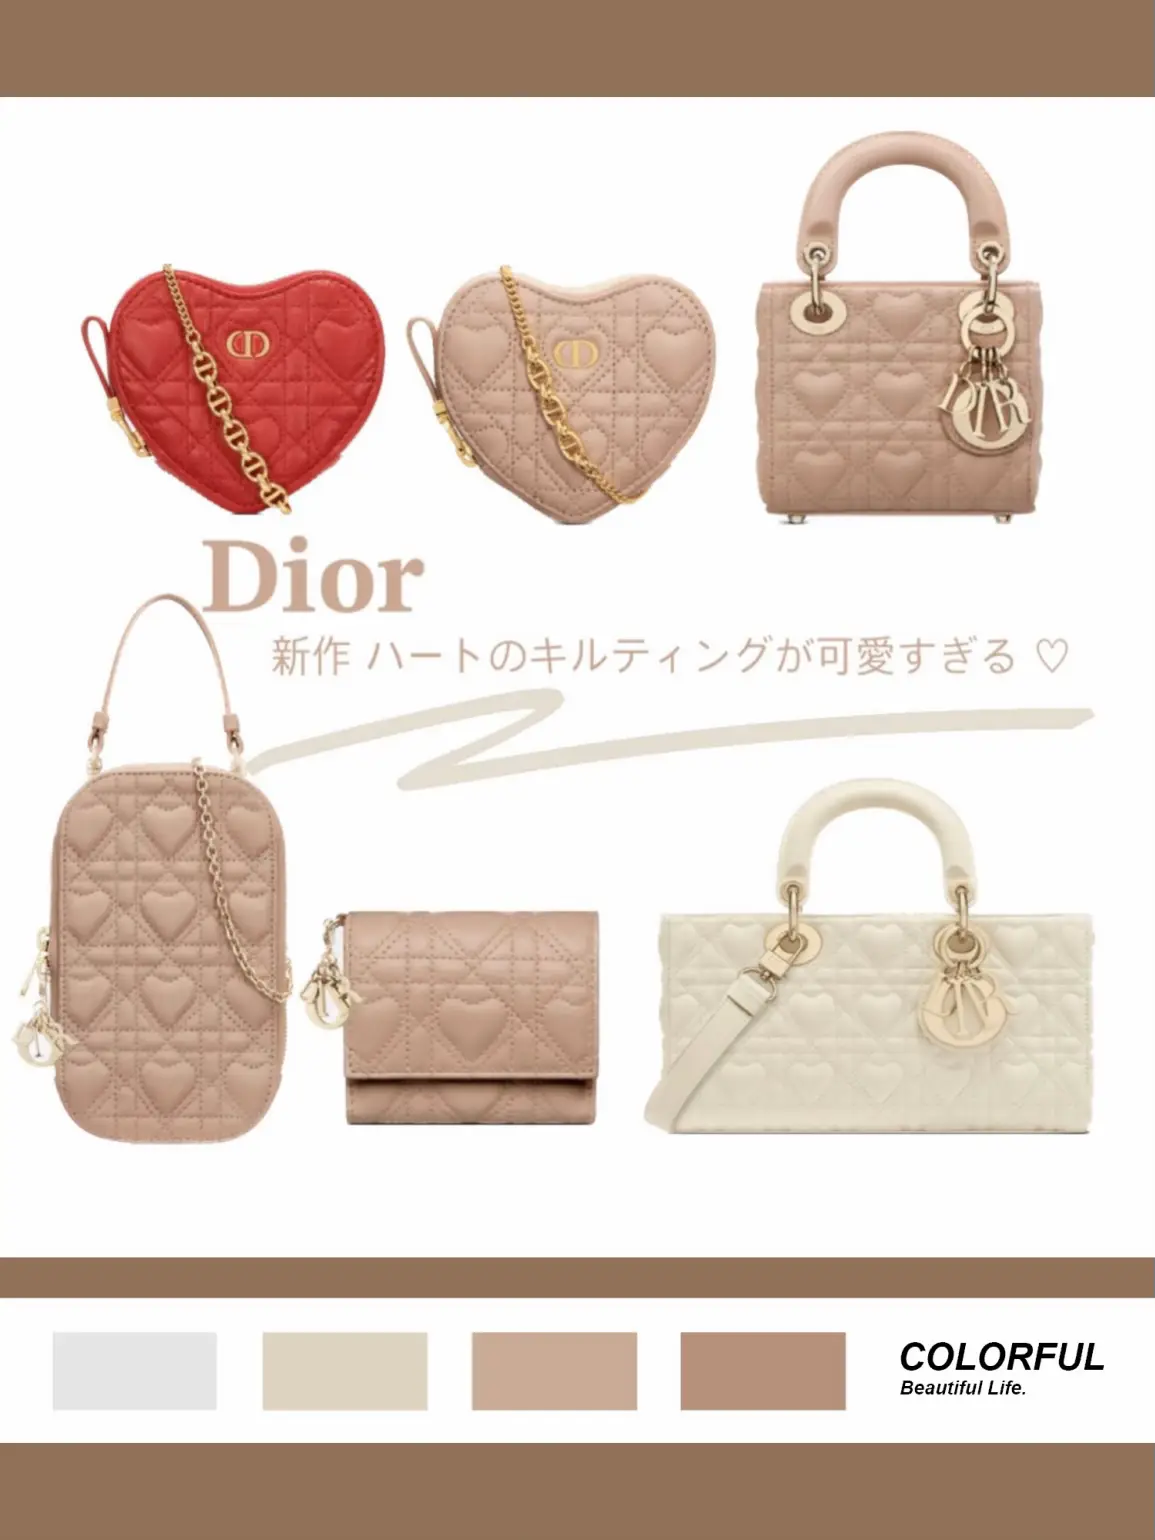 Dior新作 / ハートのキルティングが即売り切れの予感 ... ♡ | haruが投稿したフォトブック | Lemon8